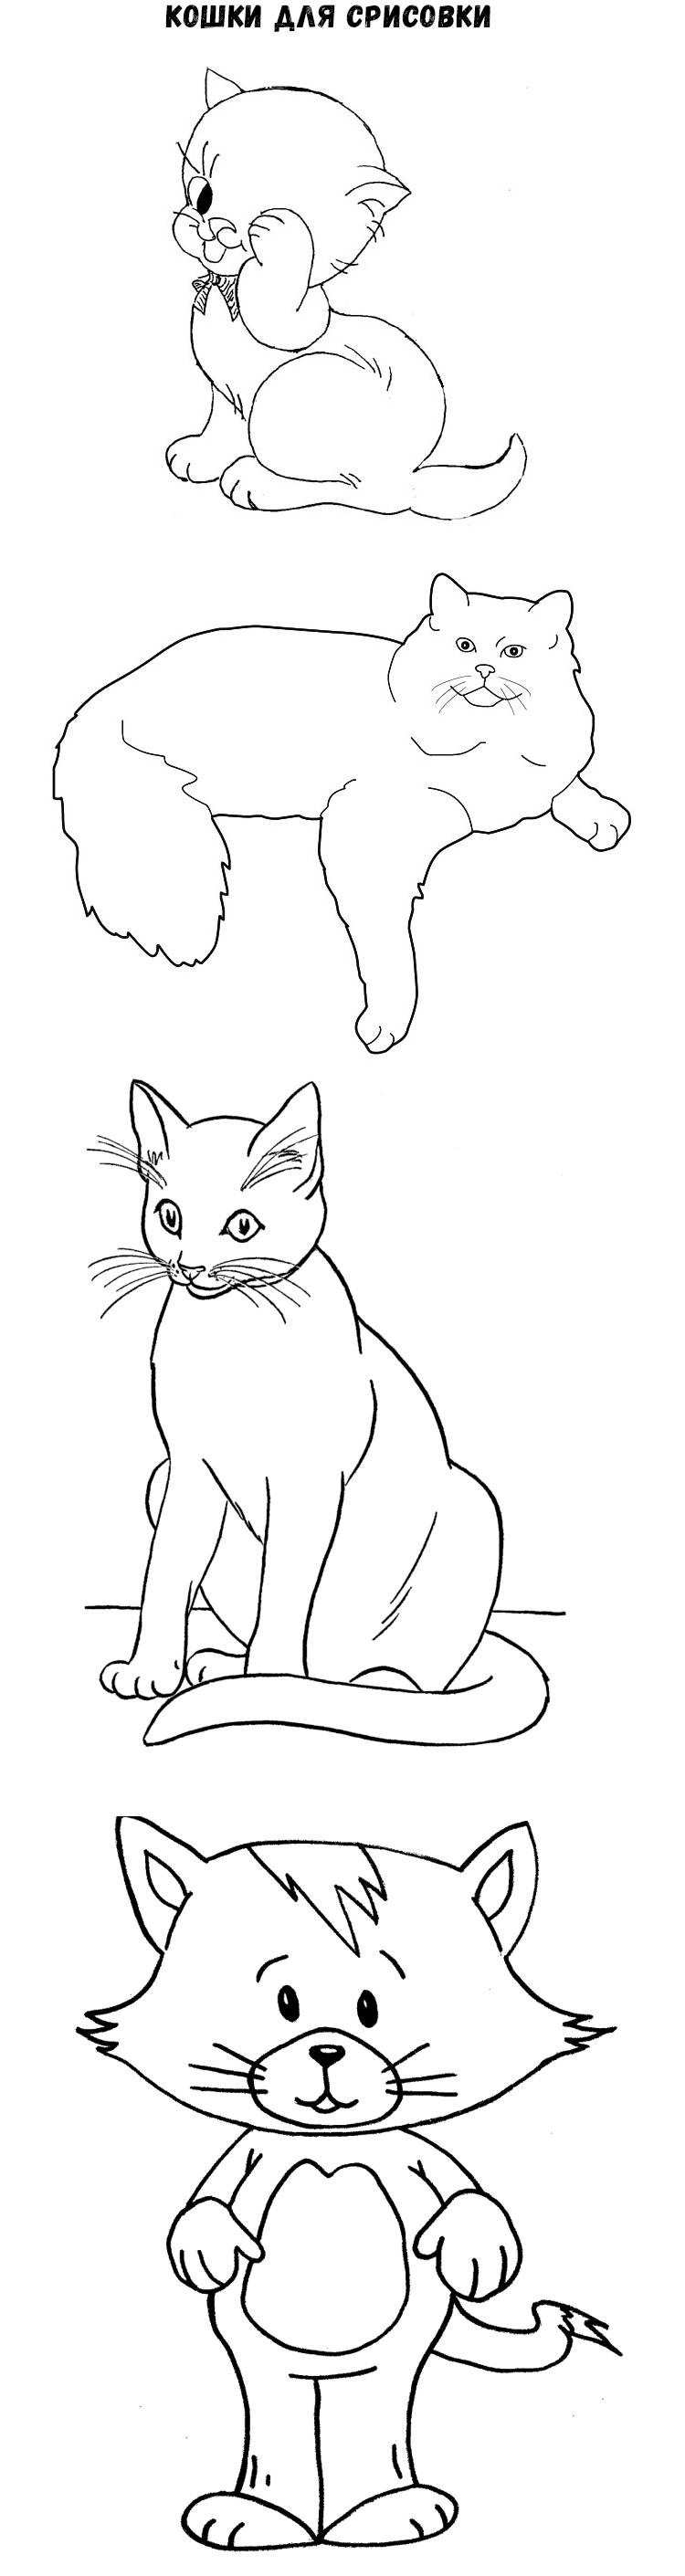 Рисунок кошки карандашом для срисовки Рисунки карандашом поэтапно